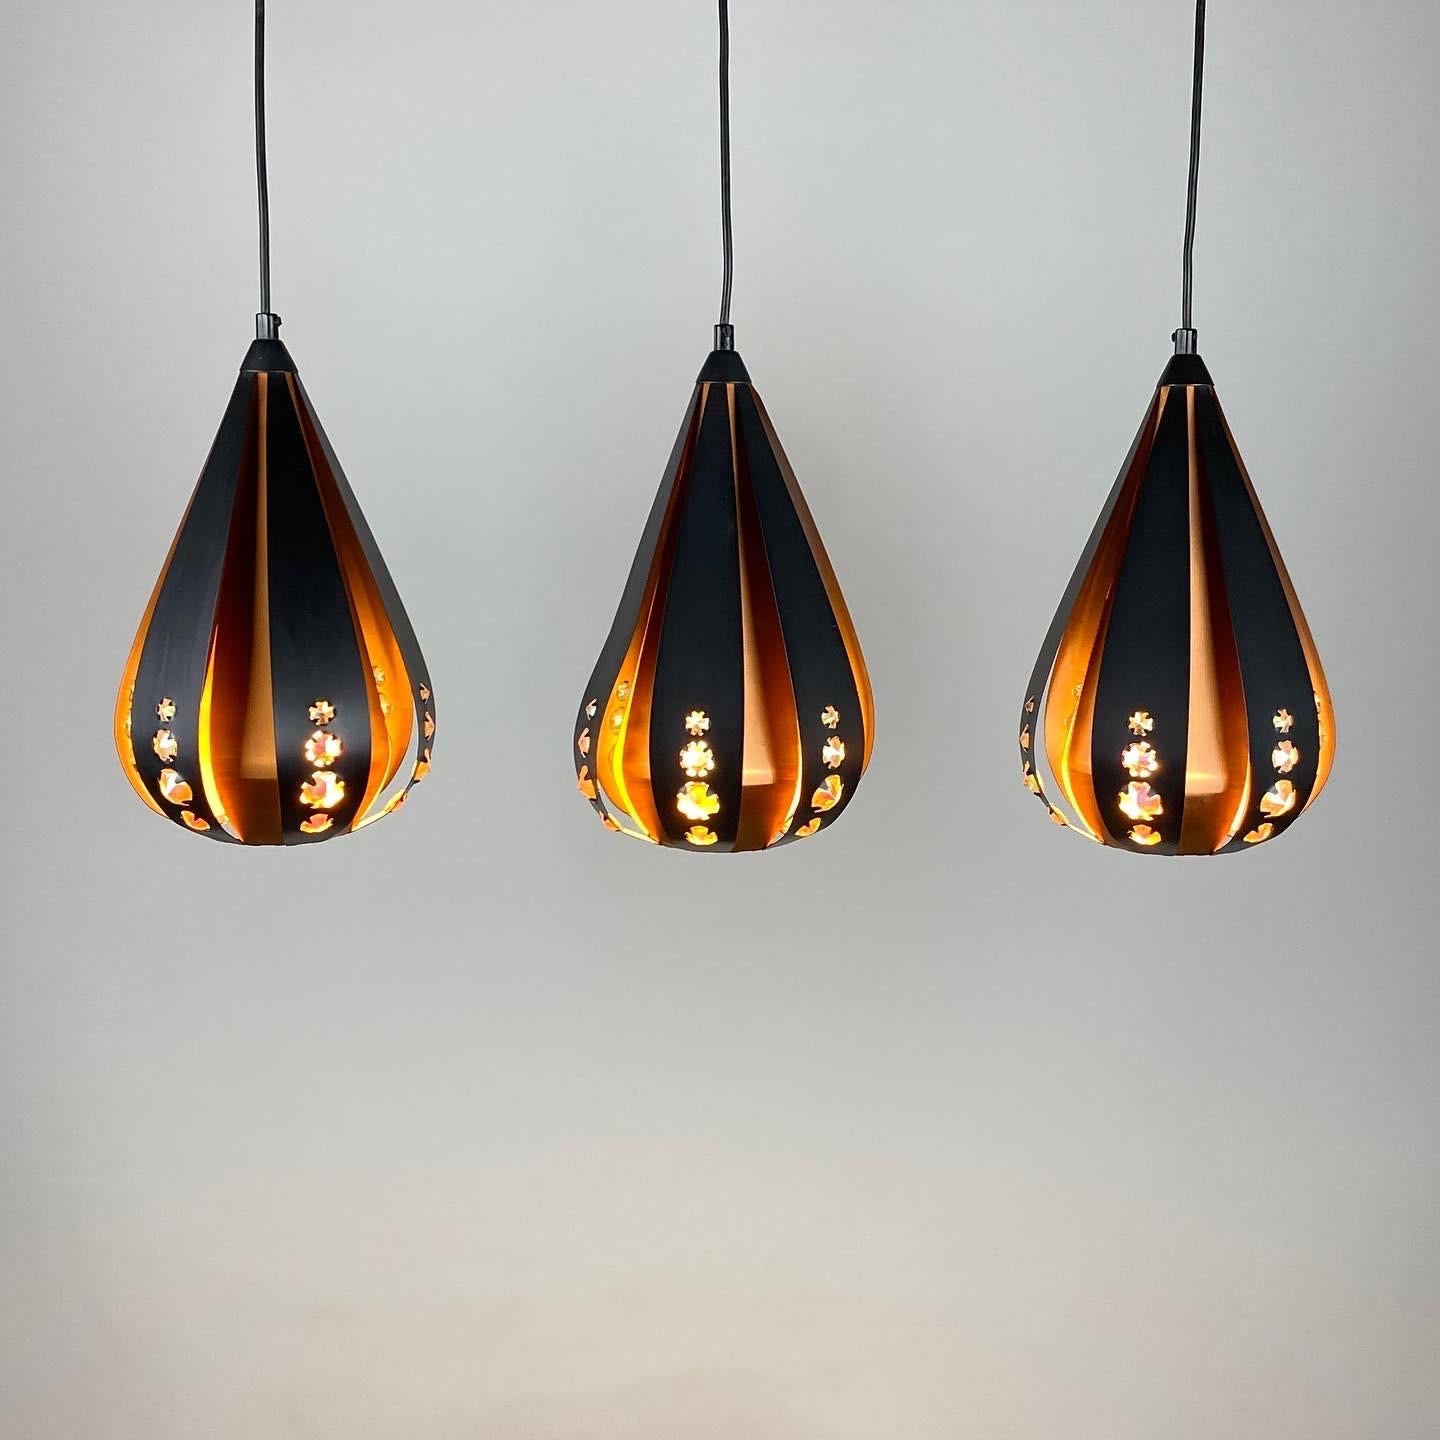 Ensemble de trois magnifiques lampes suspendues en forme de goutte d'eau par Werner Schou pour Coronell Electrical Denmark, produites entre 1960 et 1970. 

Fabriqué à partir de cuivre, de lattes de métal noir et de pièces de verre rectangulaires